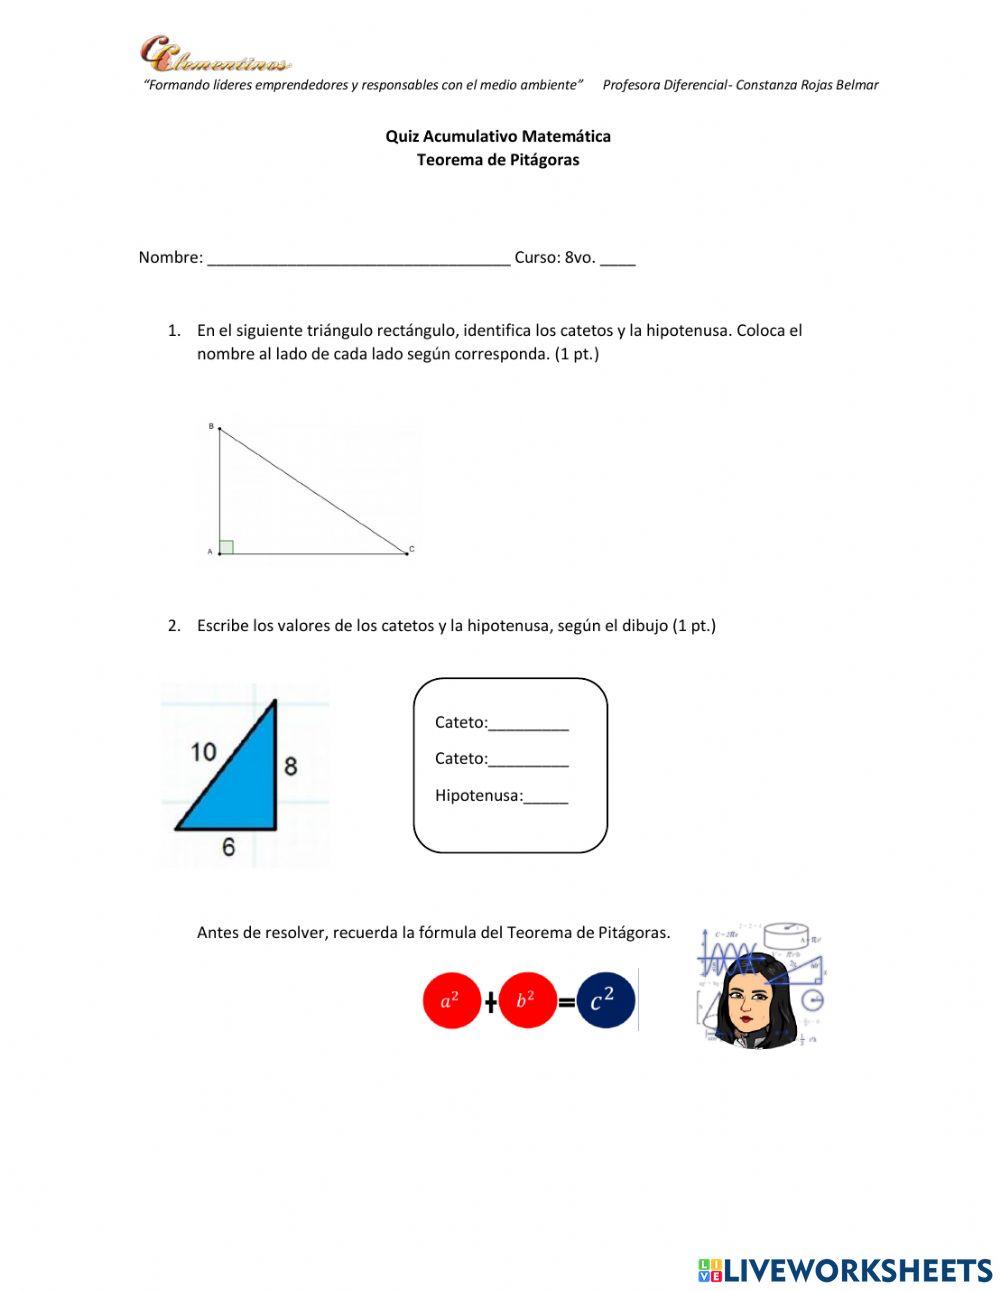 Quiz Teorema de Pitágoras